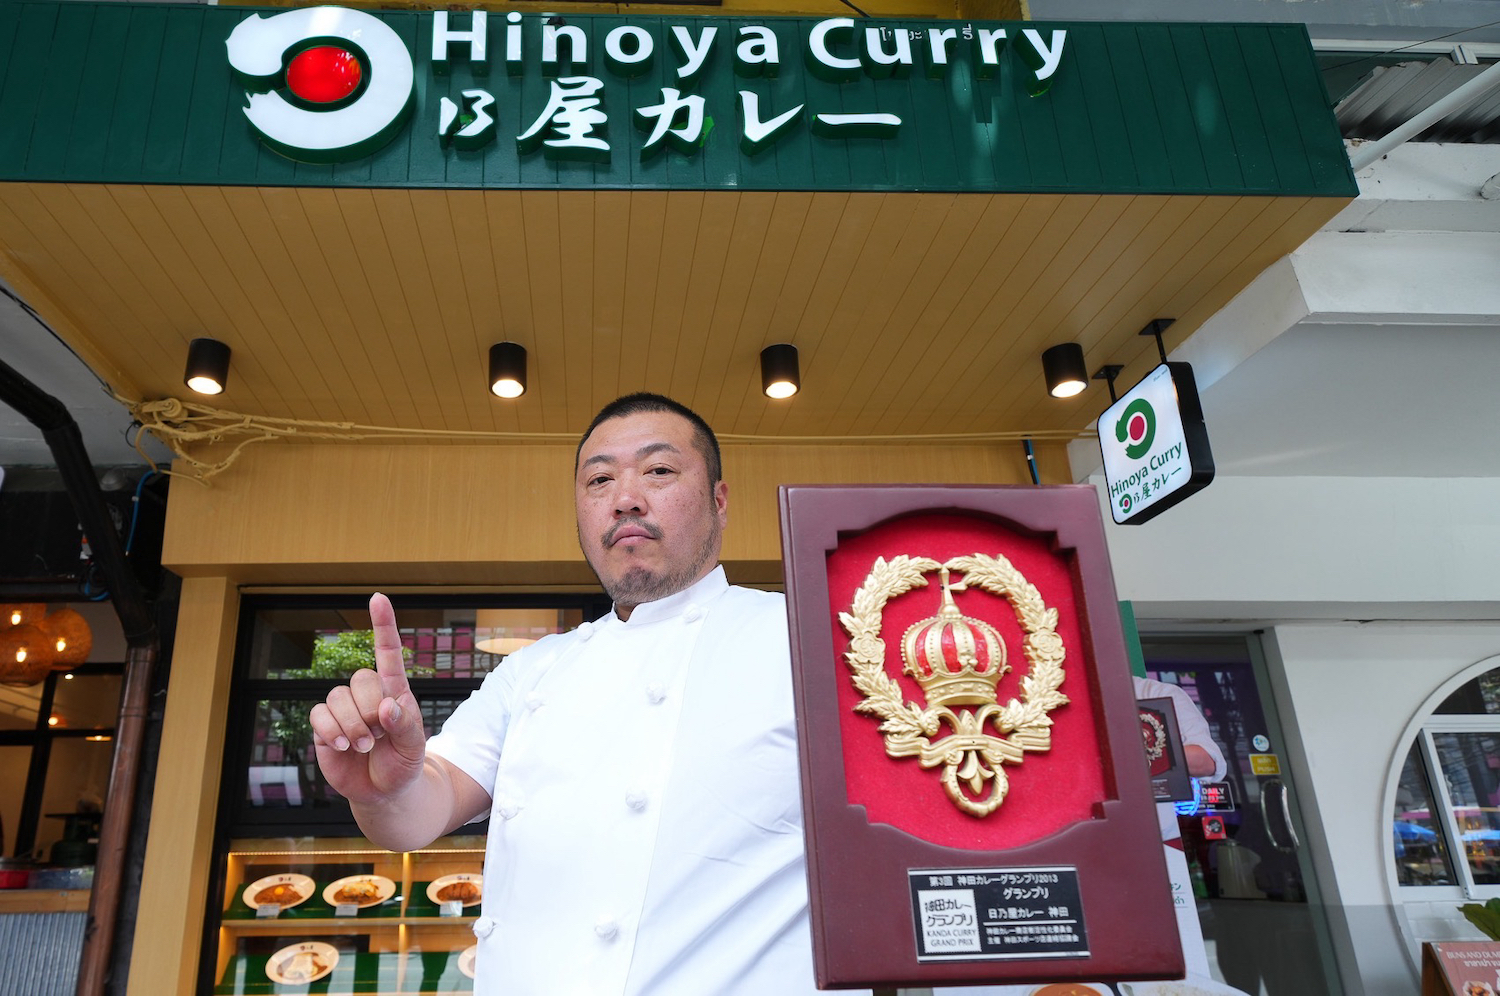 ปักหมุดความอร่อย “Hinoya Curry” ข้าวแกงกะหรี่ดีกรีแชมป์ เปิดสาขาใหม่ที่ “บรรทัดทอง” สัมผัสรสแบบญี่ปุ่นขนานแท้ เอาใจคนรักแกงกะหรี่